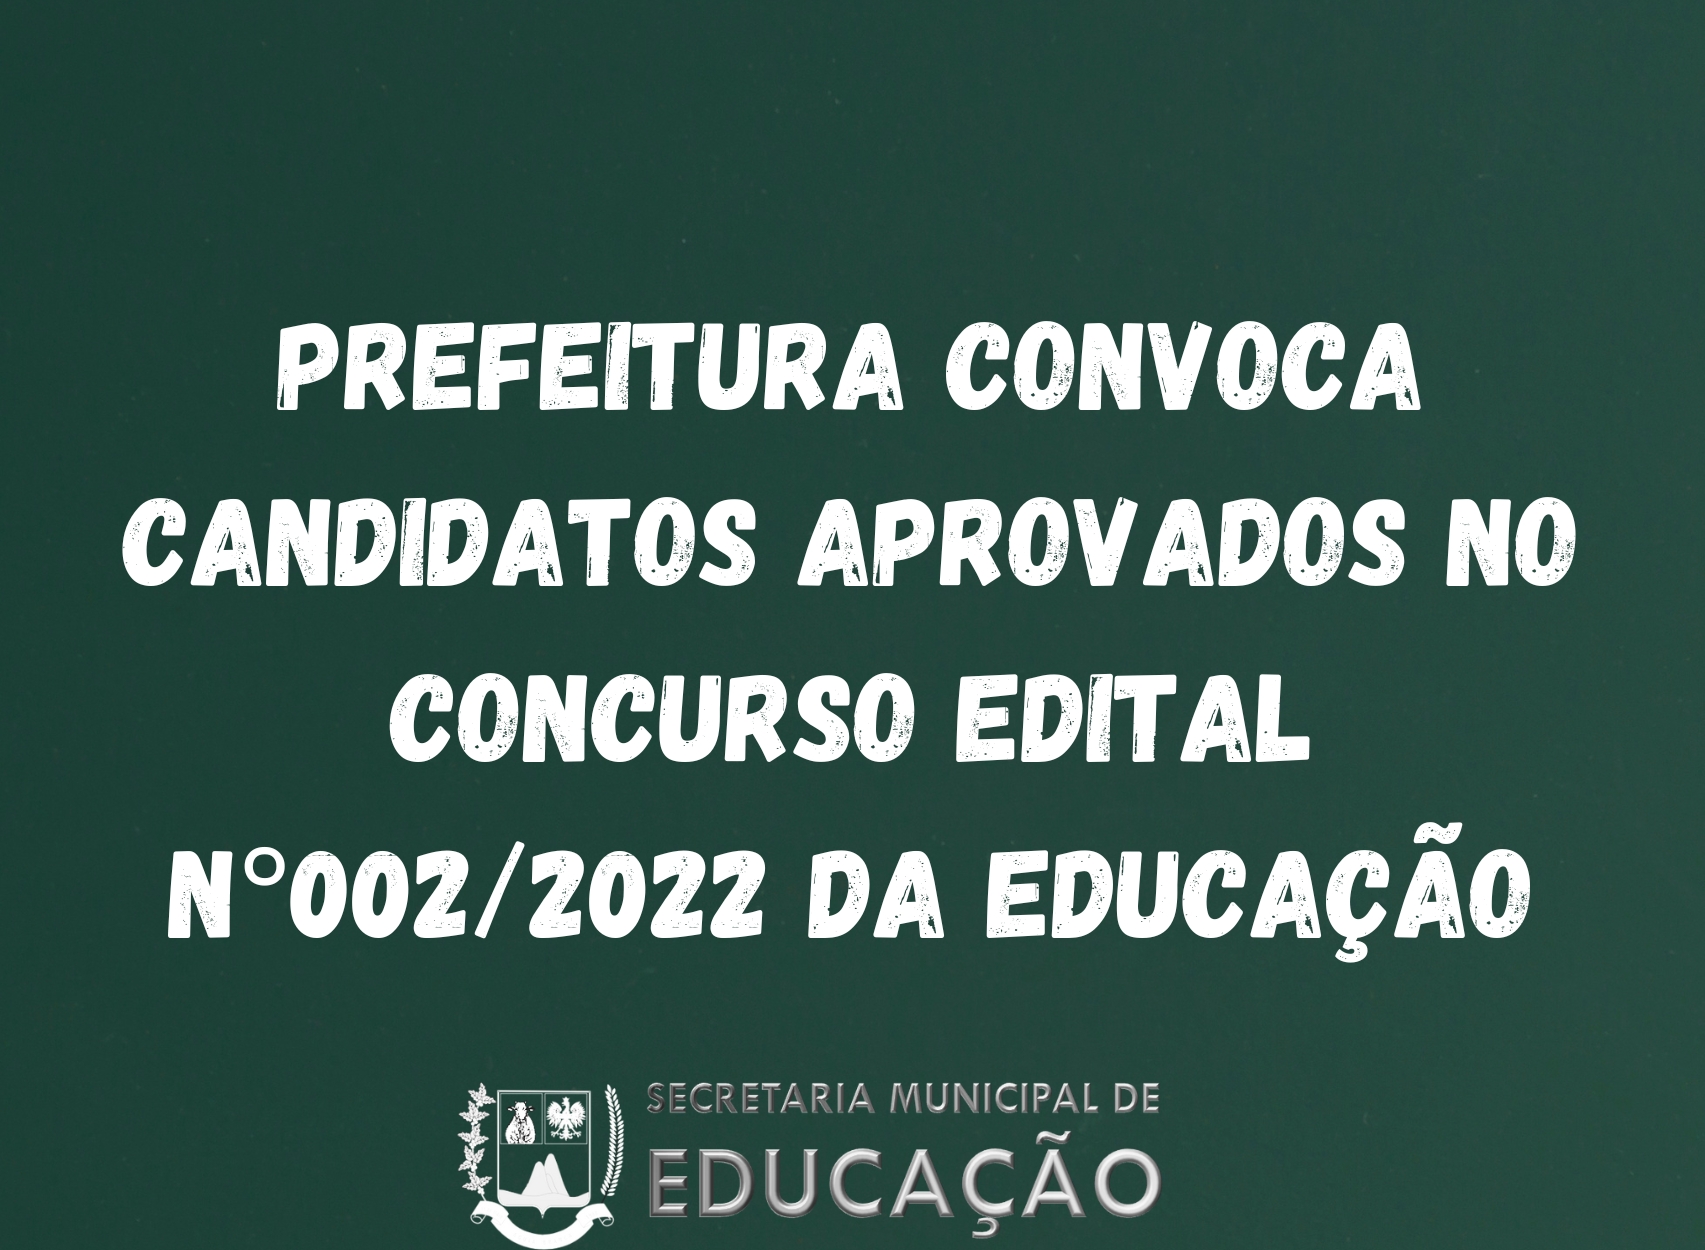  Prefeitura Convoca Candidatos Aprovados no Concurso Edital n°002/2022 Educação